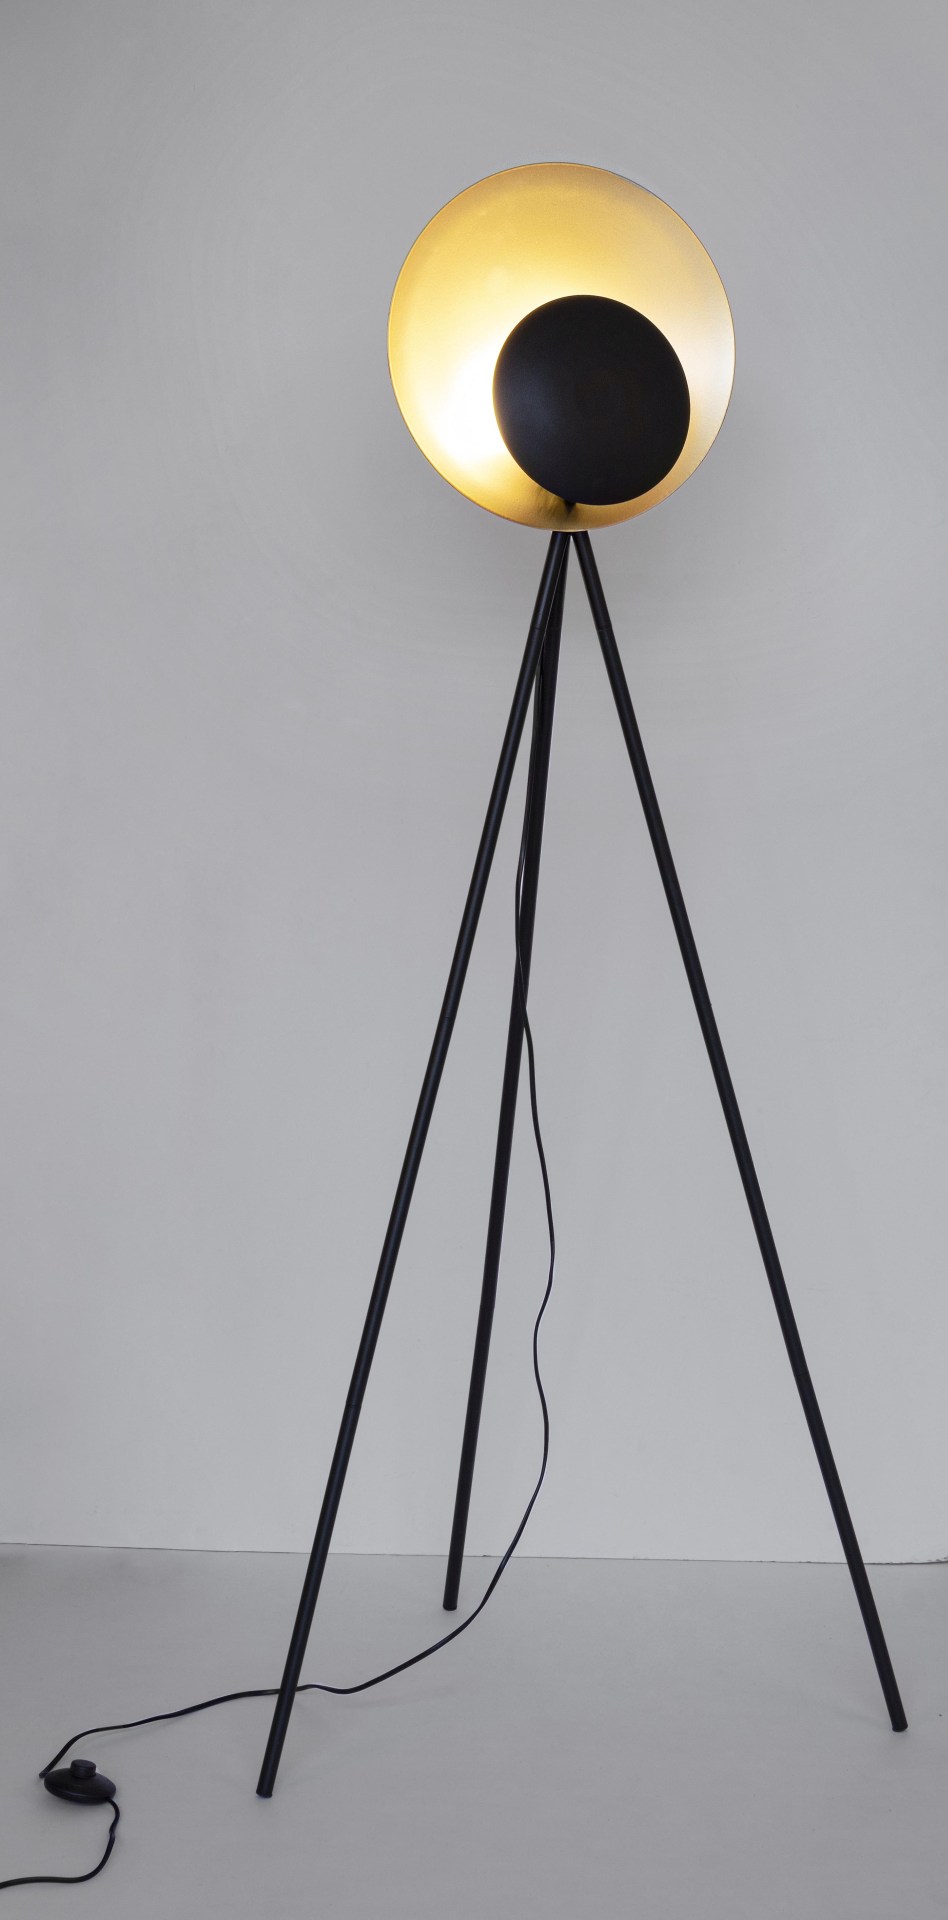 Die Stehleuchte Design überzeugt mit ihrem modernen Design. Gefertigt wurde sie aus Metall, welches einen schwarzen Farbton besitzt. Der Lampenschirm ist auch aus Metall und hat eine goldene Farbe. Die Lampe besitzt eine Höhe von 155 cm.